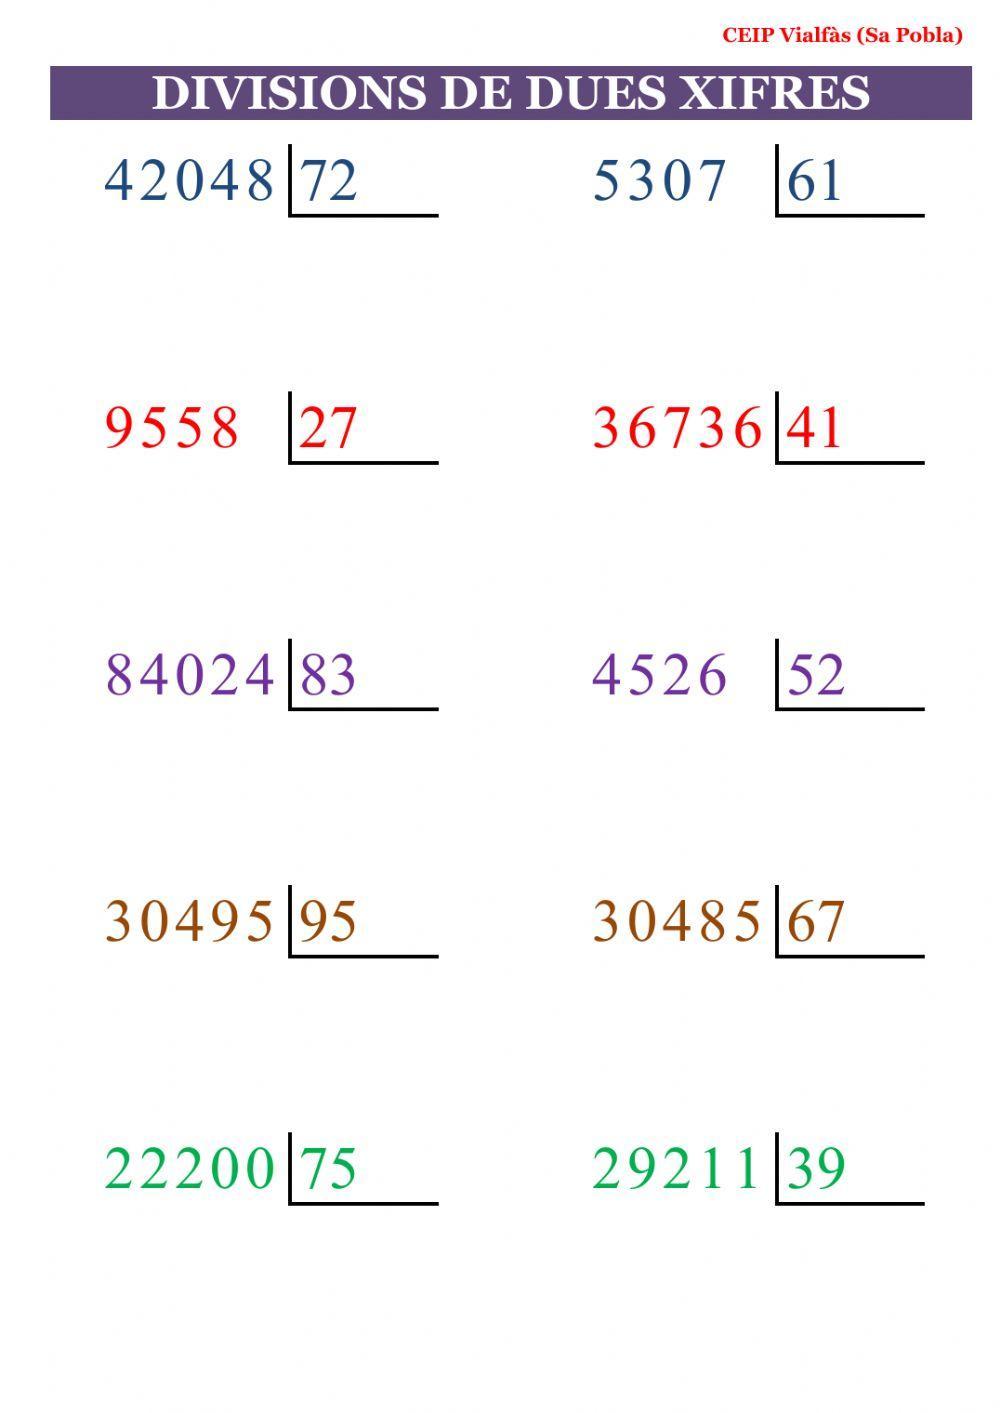 Divisions amb dues xifres